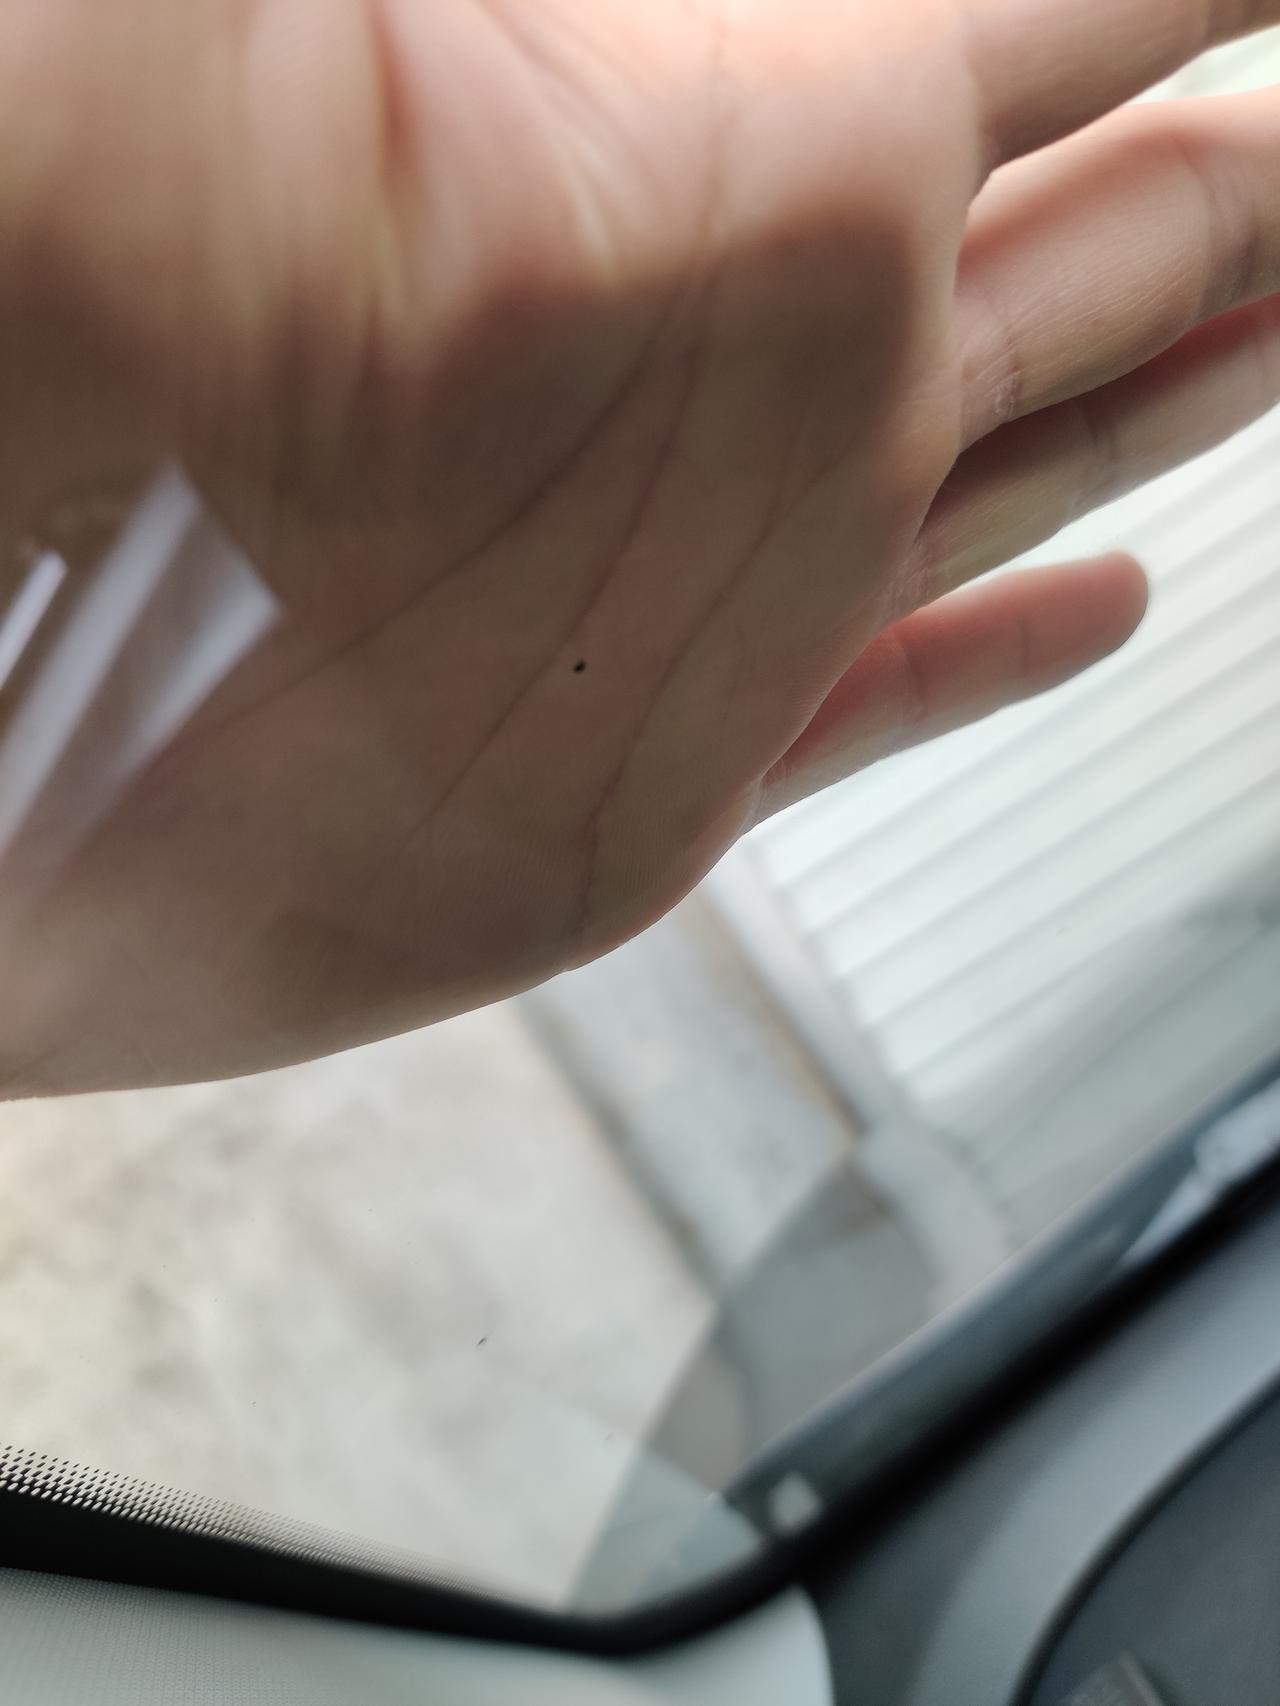 奇瑞瑞虎5x 今天开雨刮发现玻璃上有个小黑点刮不干净，以为是顽固污渍，跑到车外一看发现是一个小凹坑，0.5-1毫米大。严